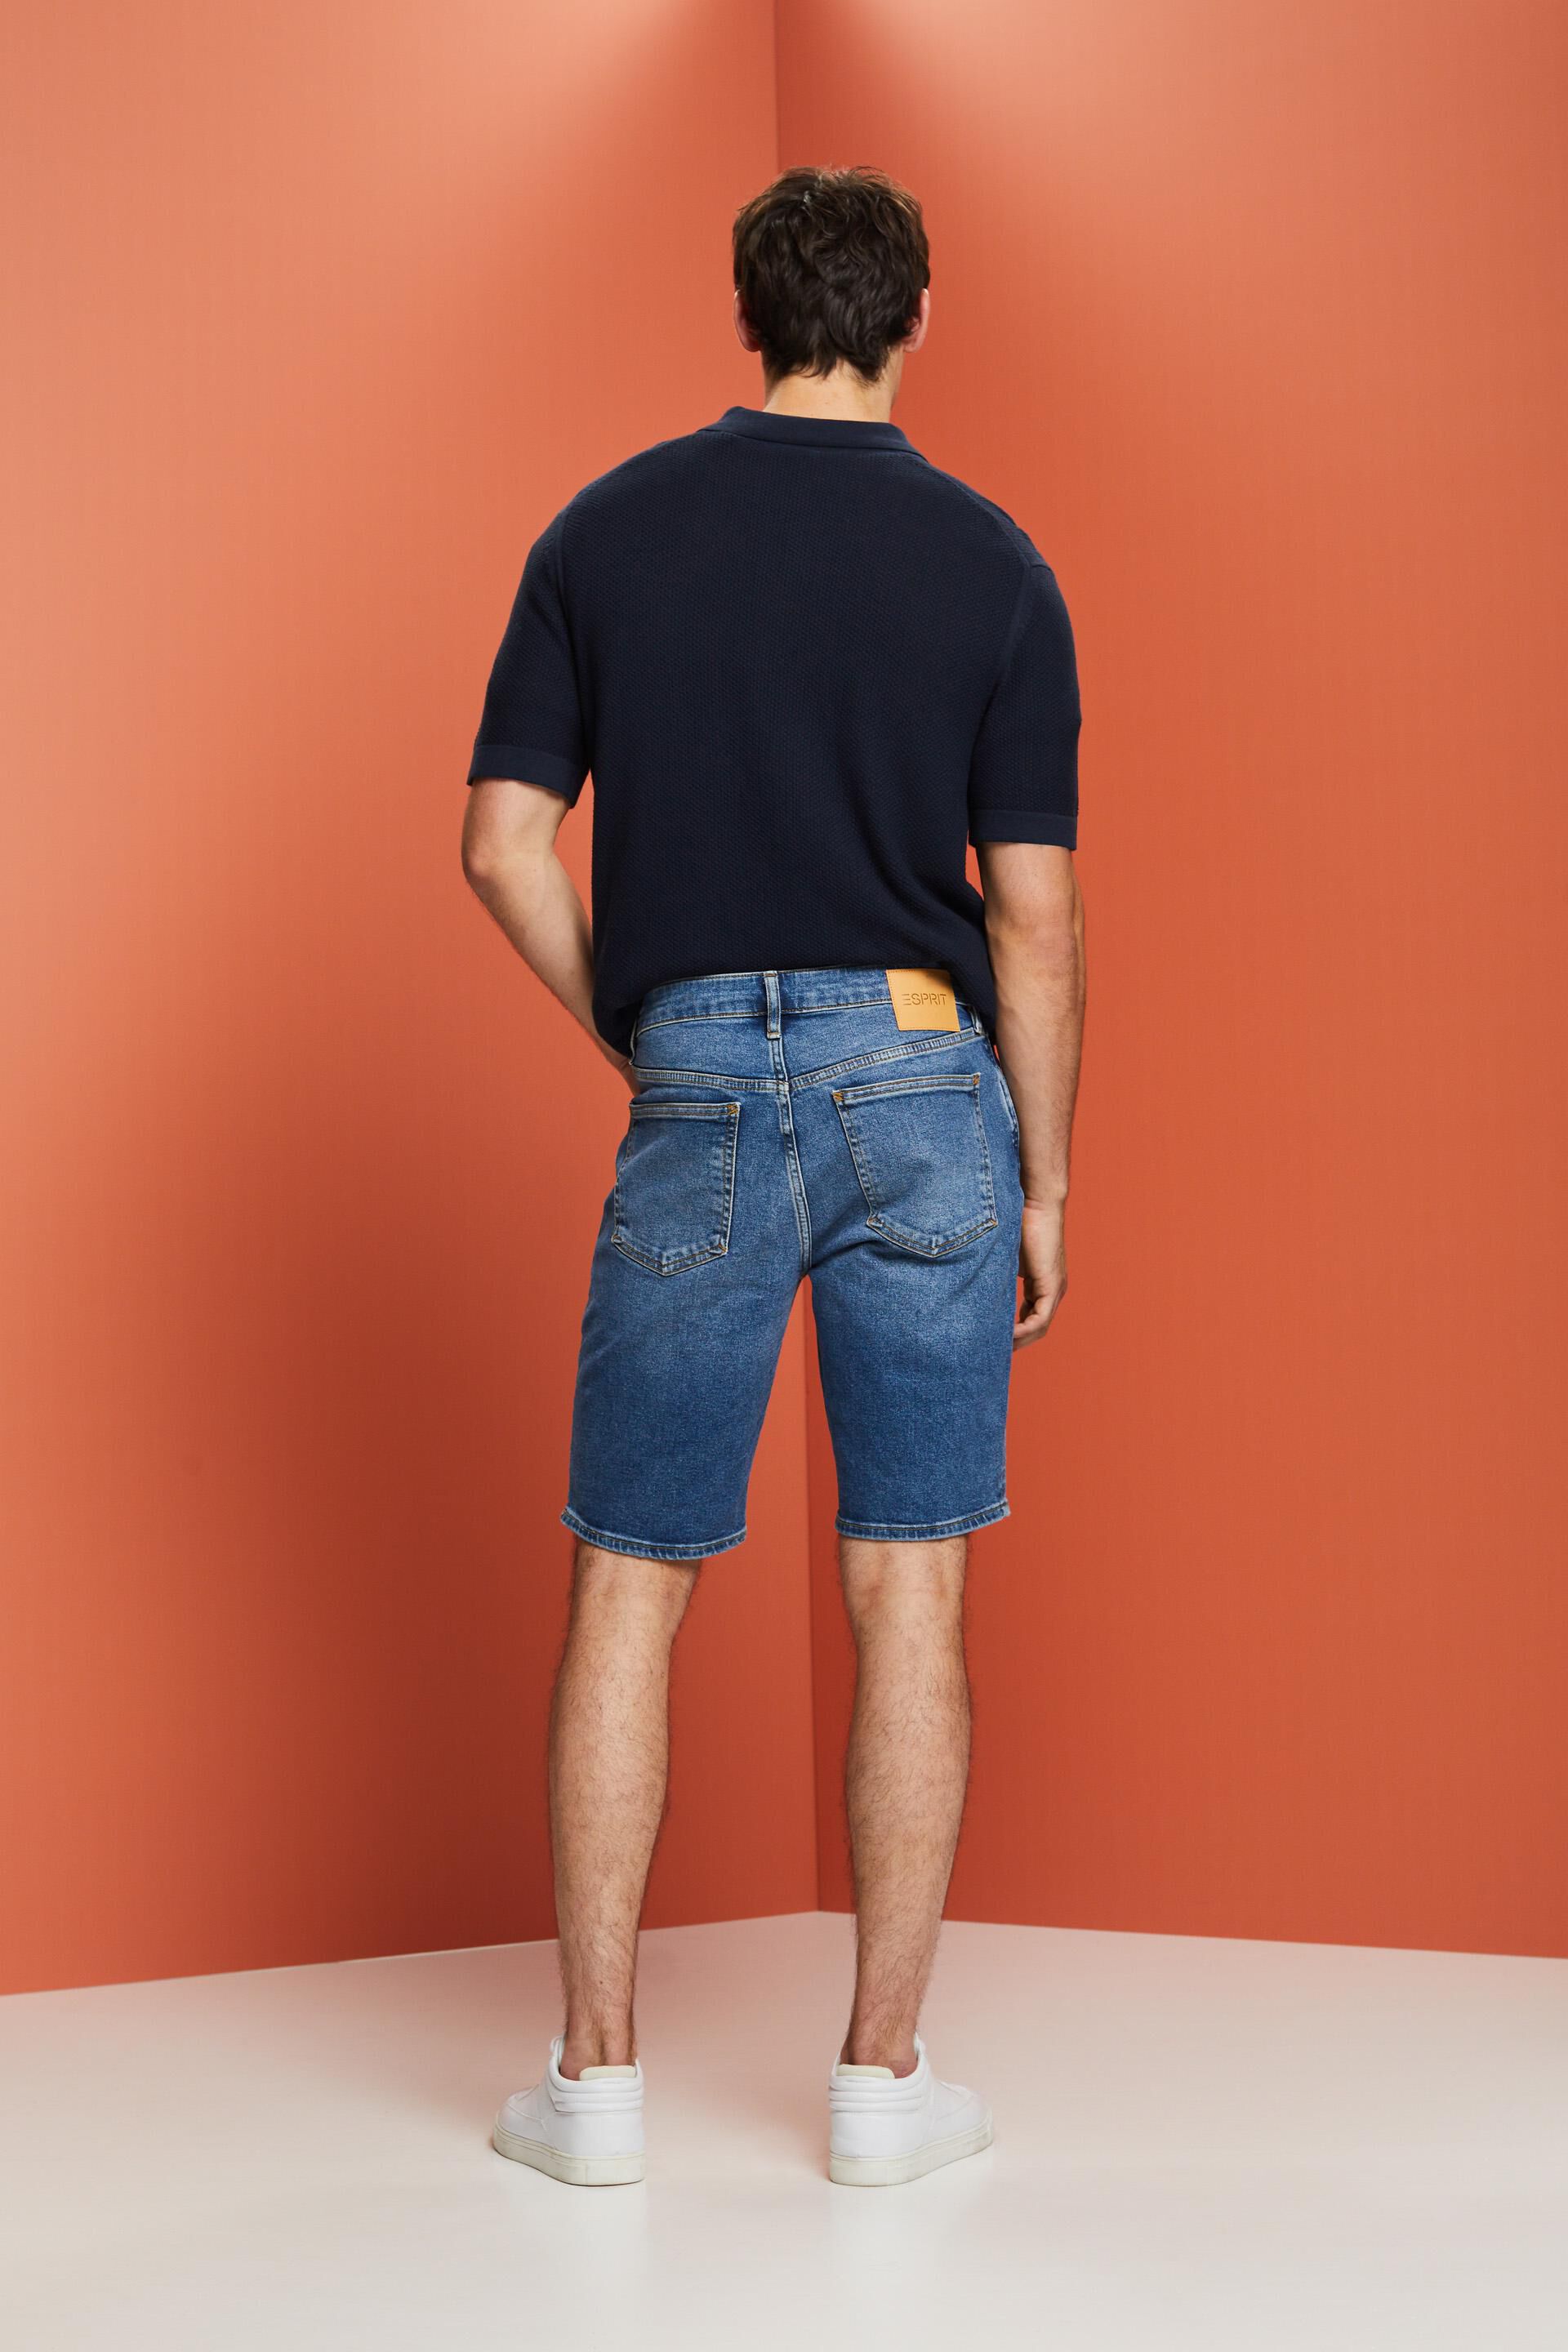 Men Denim Shorts Half Pants Side Pocket Cargo Jeans Regular Fit Trousers  Summer | eBay